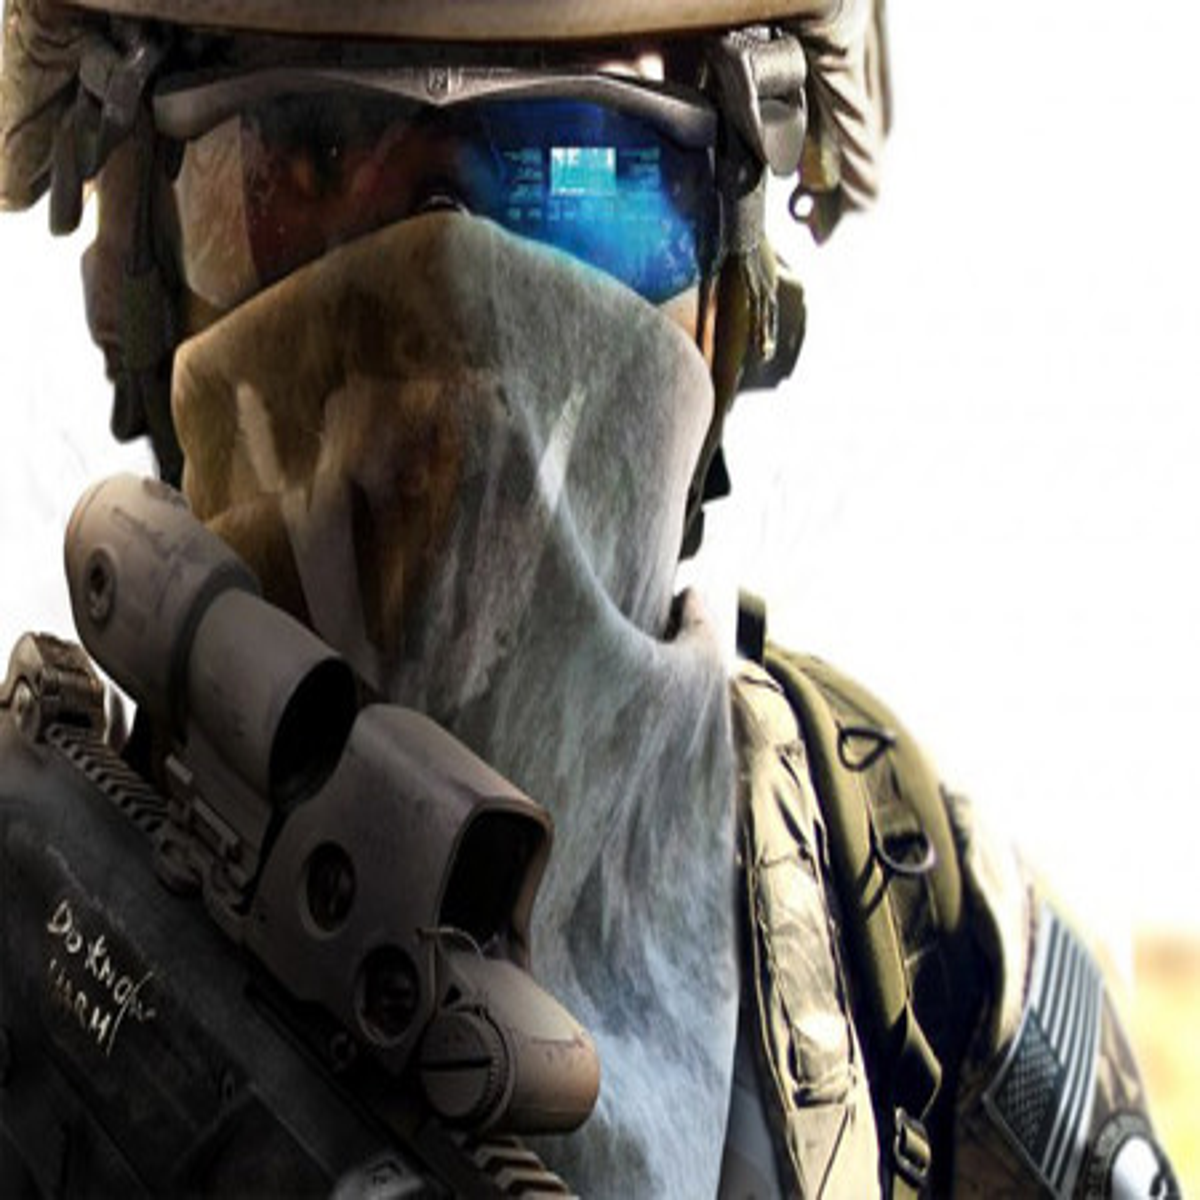 SERÁ QUE GHOST AINDA ESTÁ VIVO!? - Call of Duty Investigação 